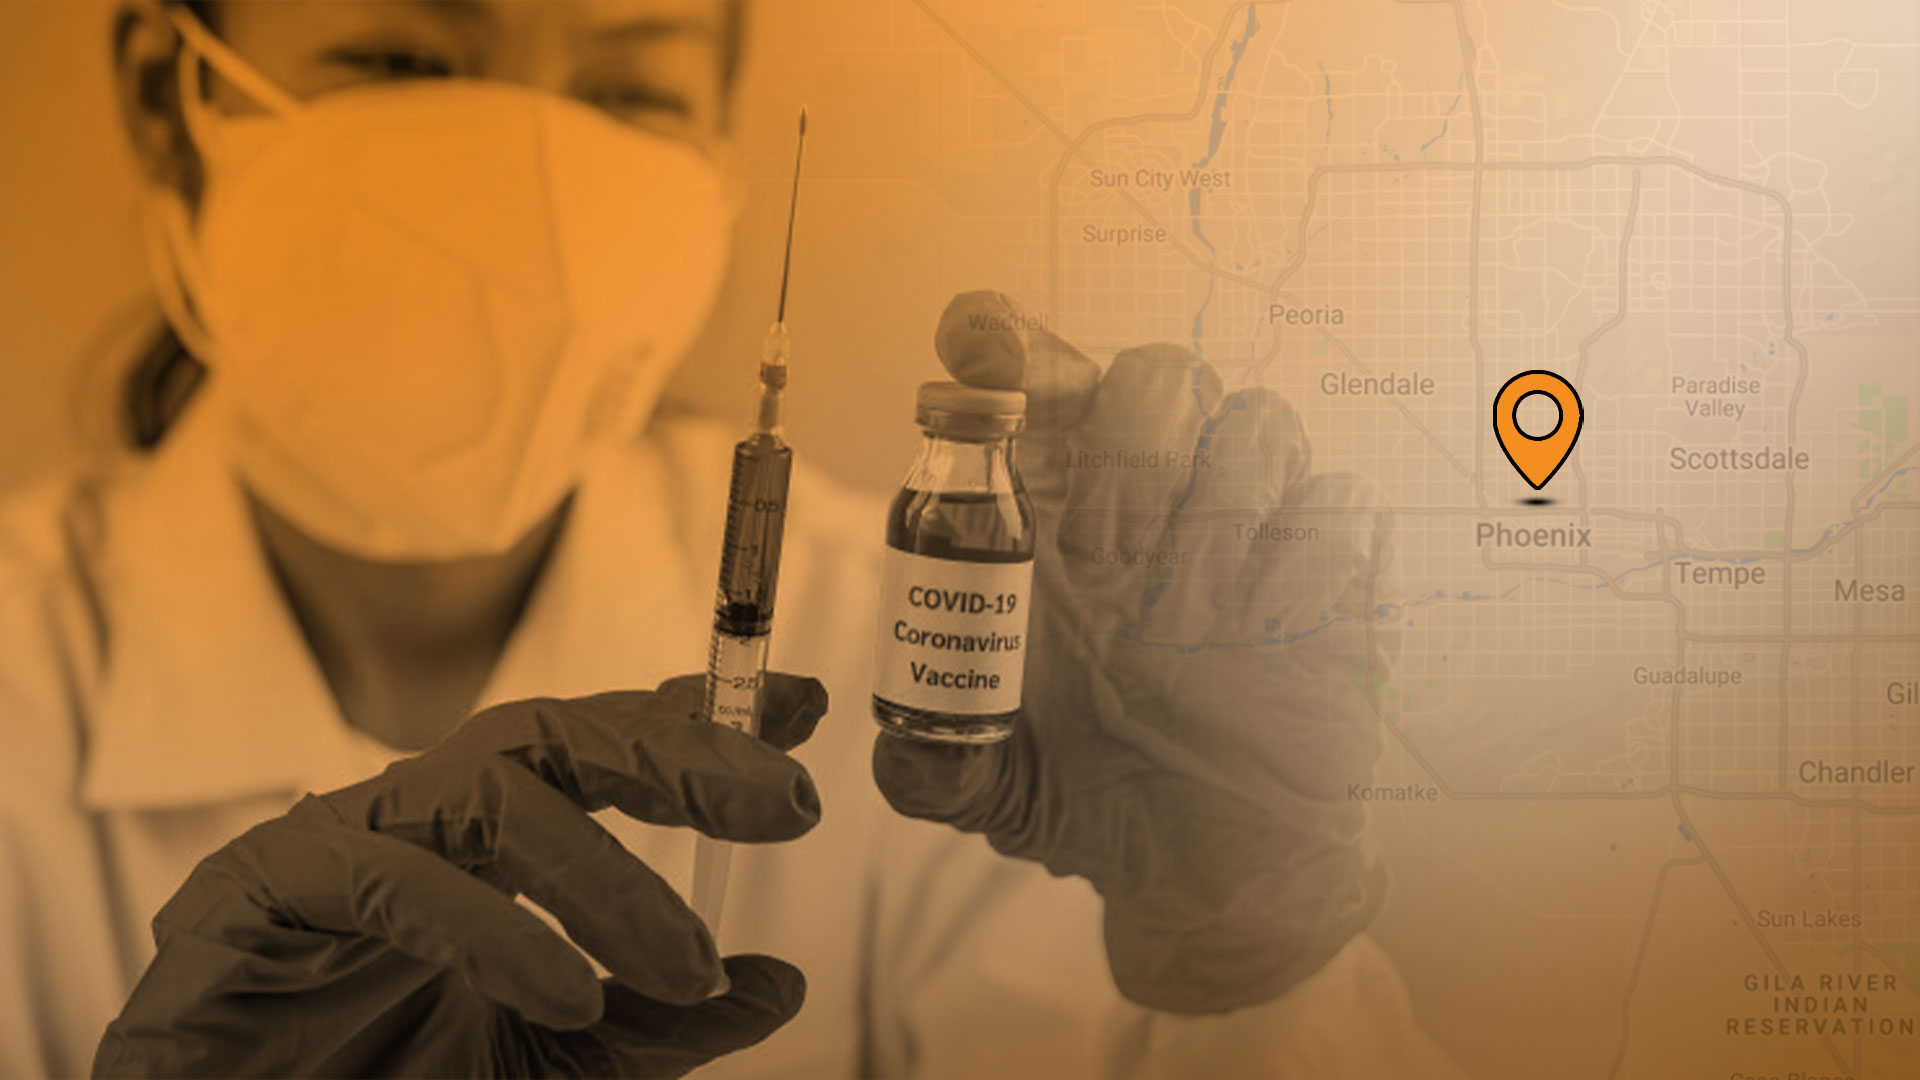 El sitio del Departamento de Salud del condado de Maricopa muestra que se han distribuido 65,552 vacunas COVID-19 hasta el día de hoy. (Ilustración: Jovani)